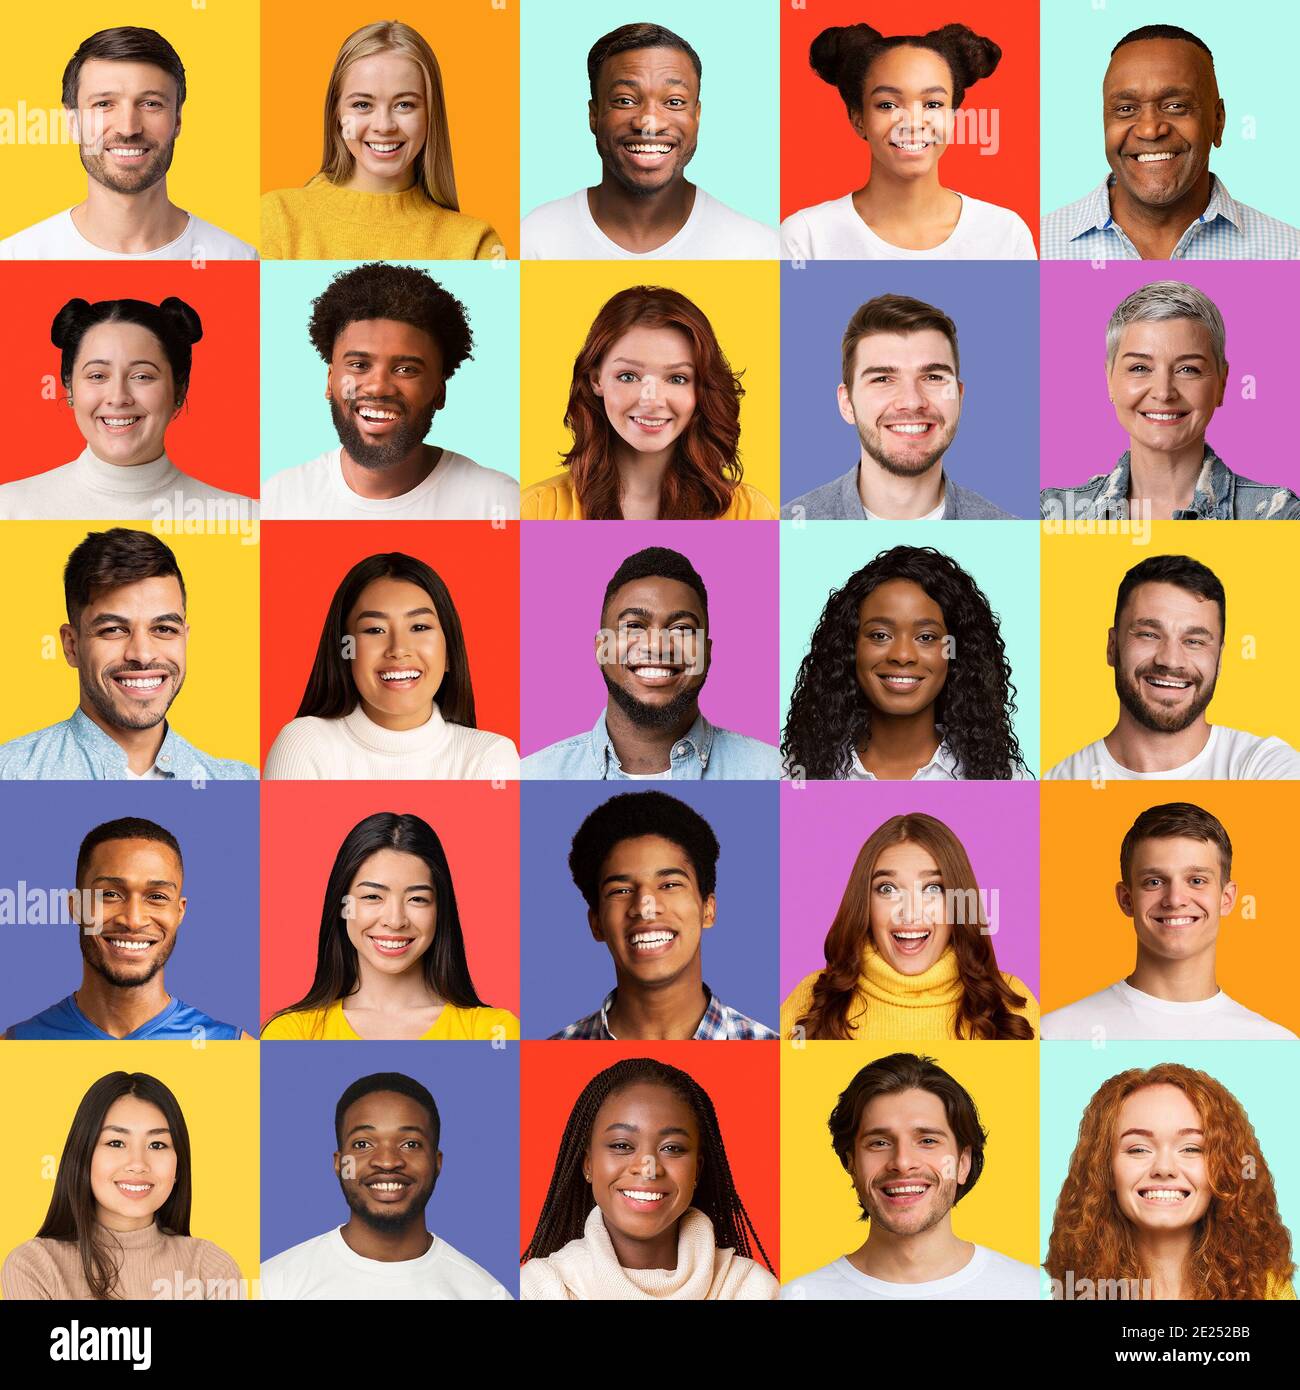 Les personnes multiethniques font face à Collage avec des hommes et des femmes, arrière-plans colorés Banque D'Images